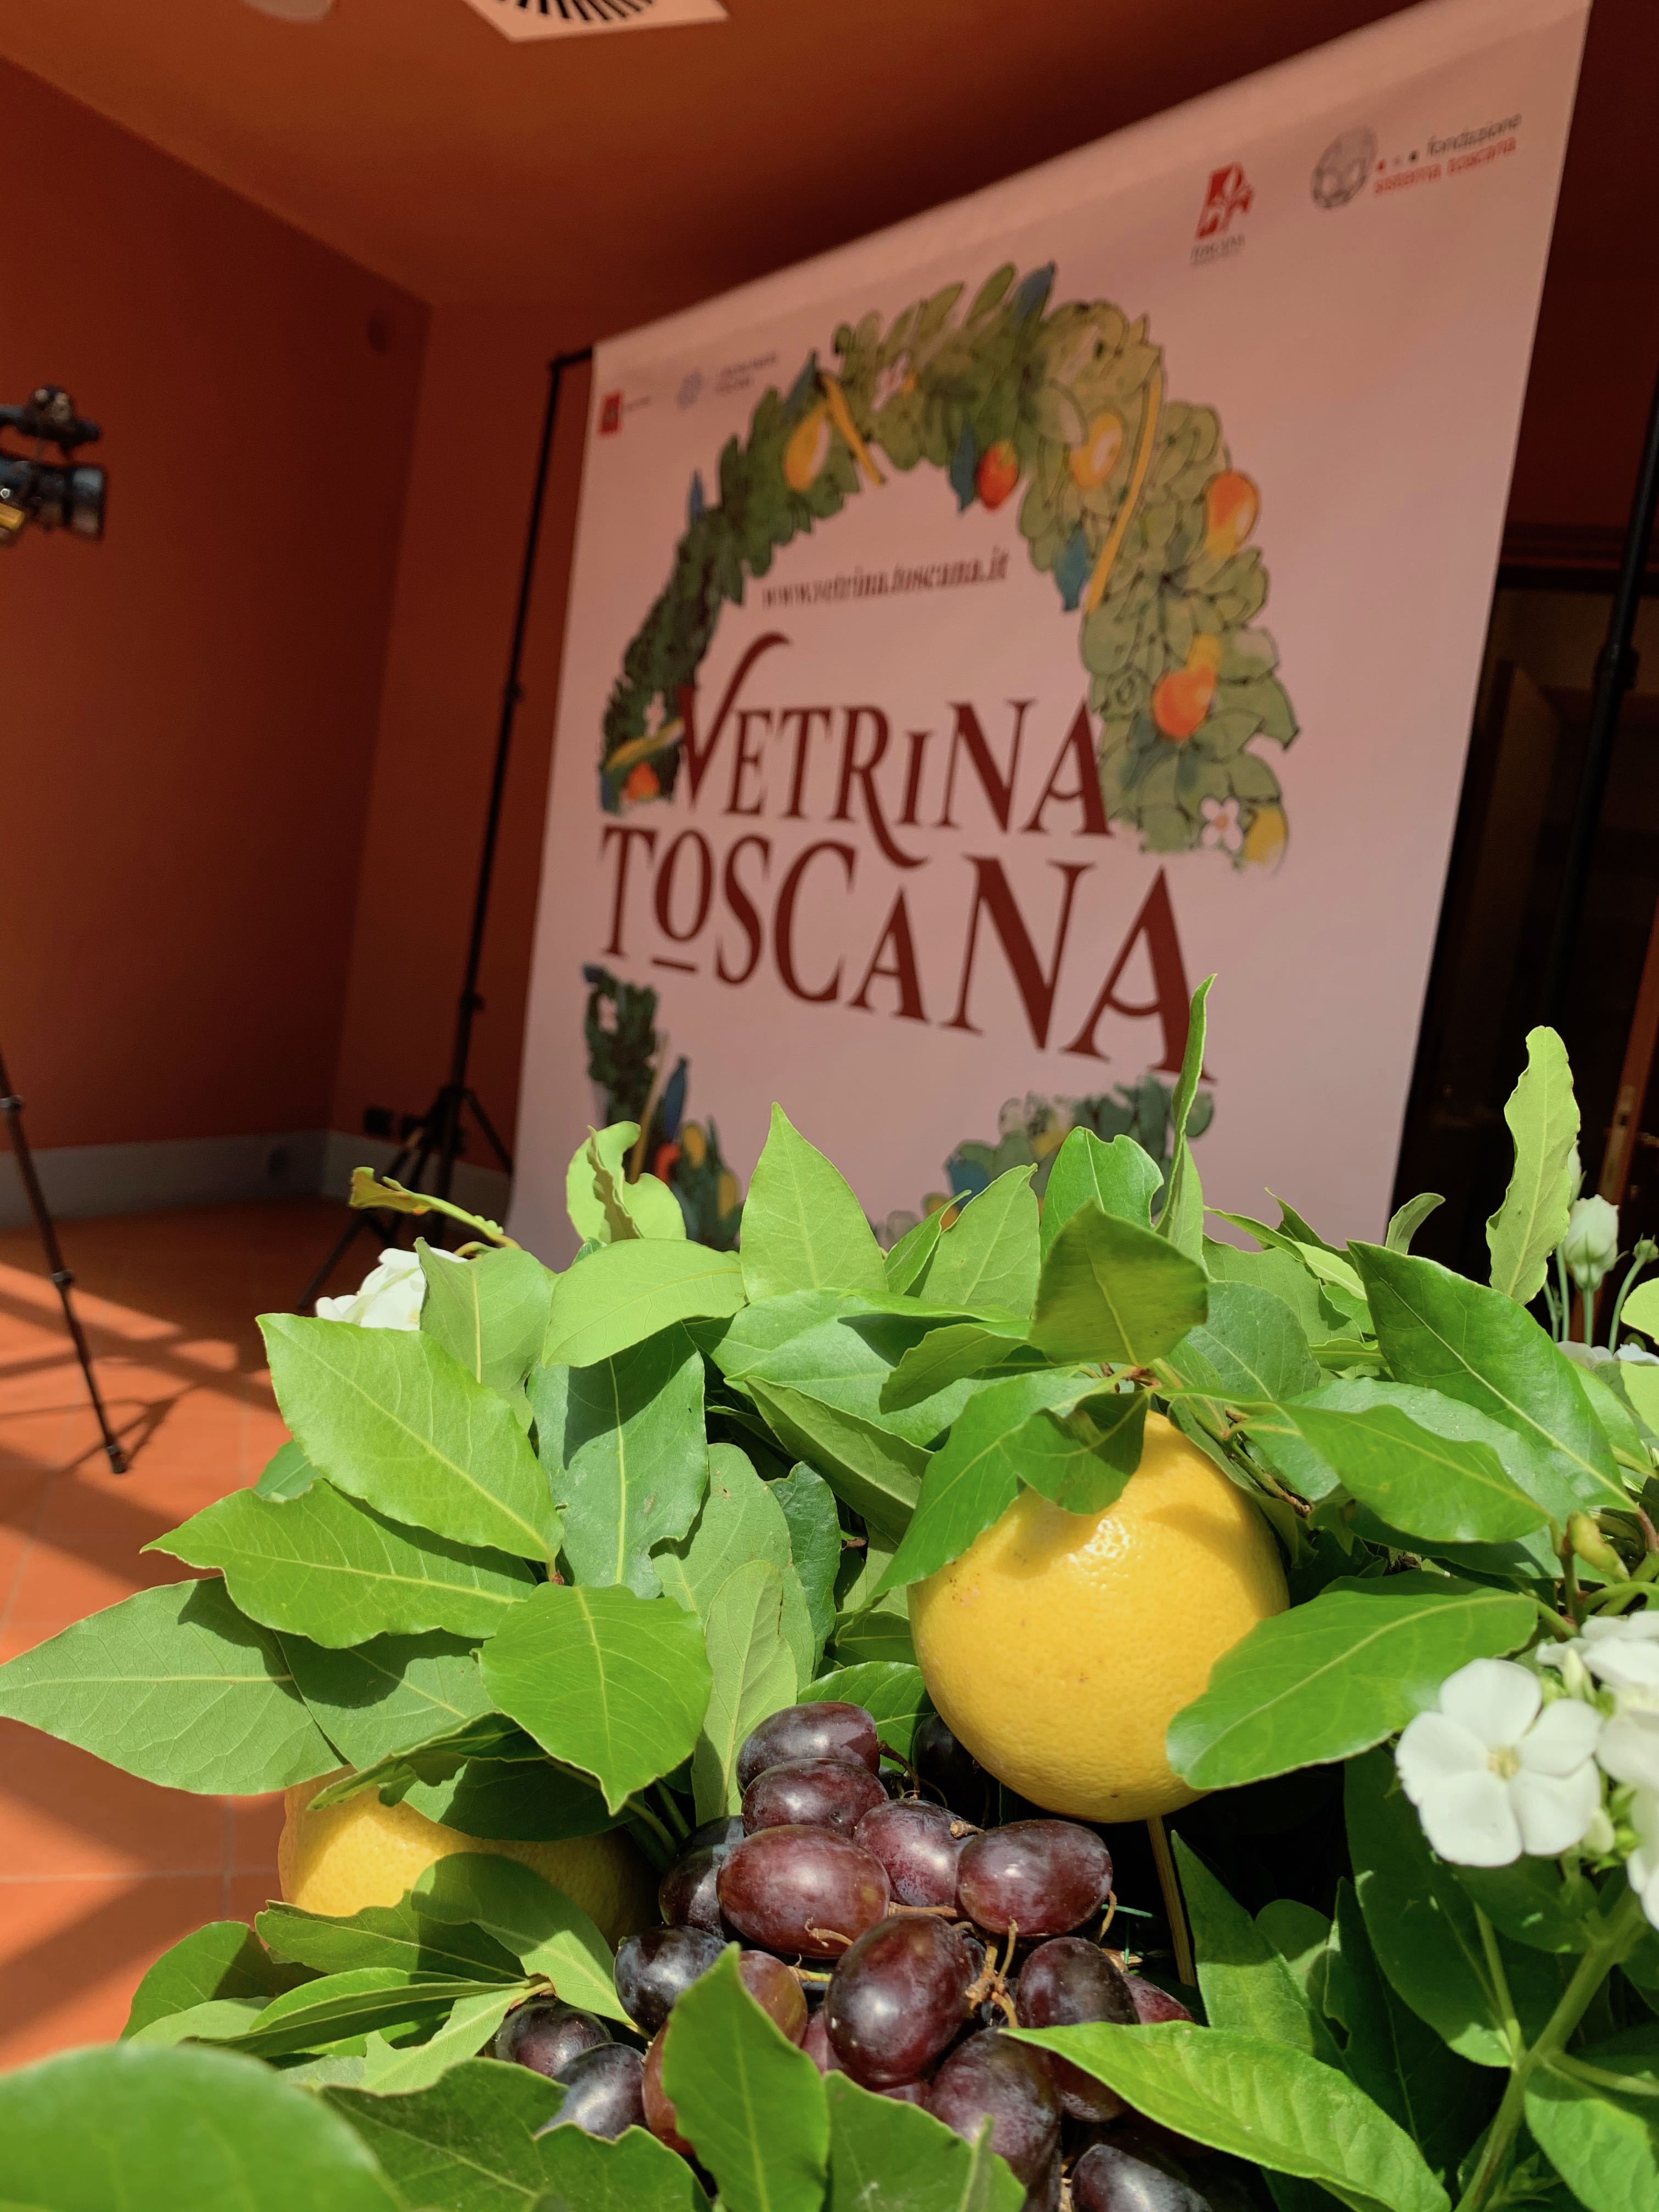 Vetrina Toscana: in viaggio con il gusto. Dal sapore della scoperta, alla scoperta dei sapori.